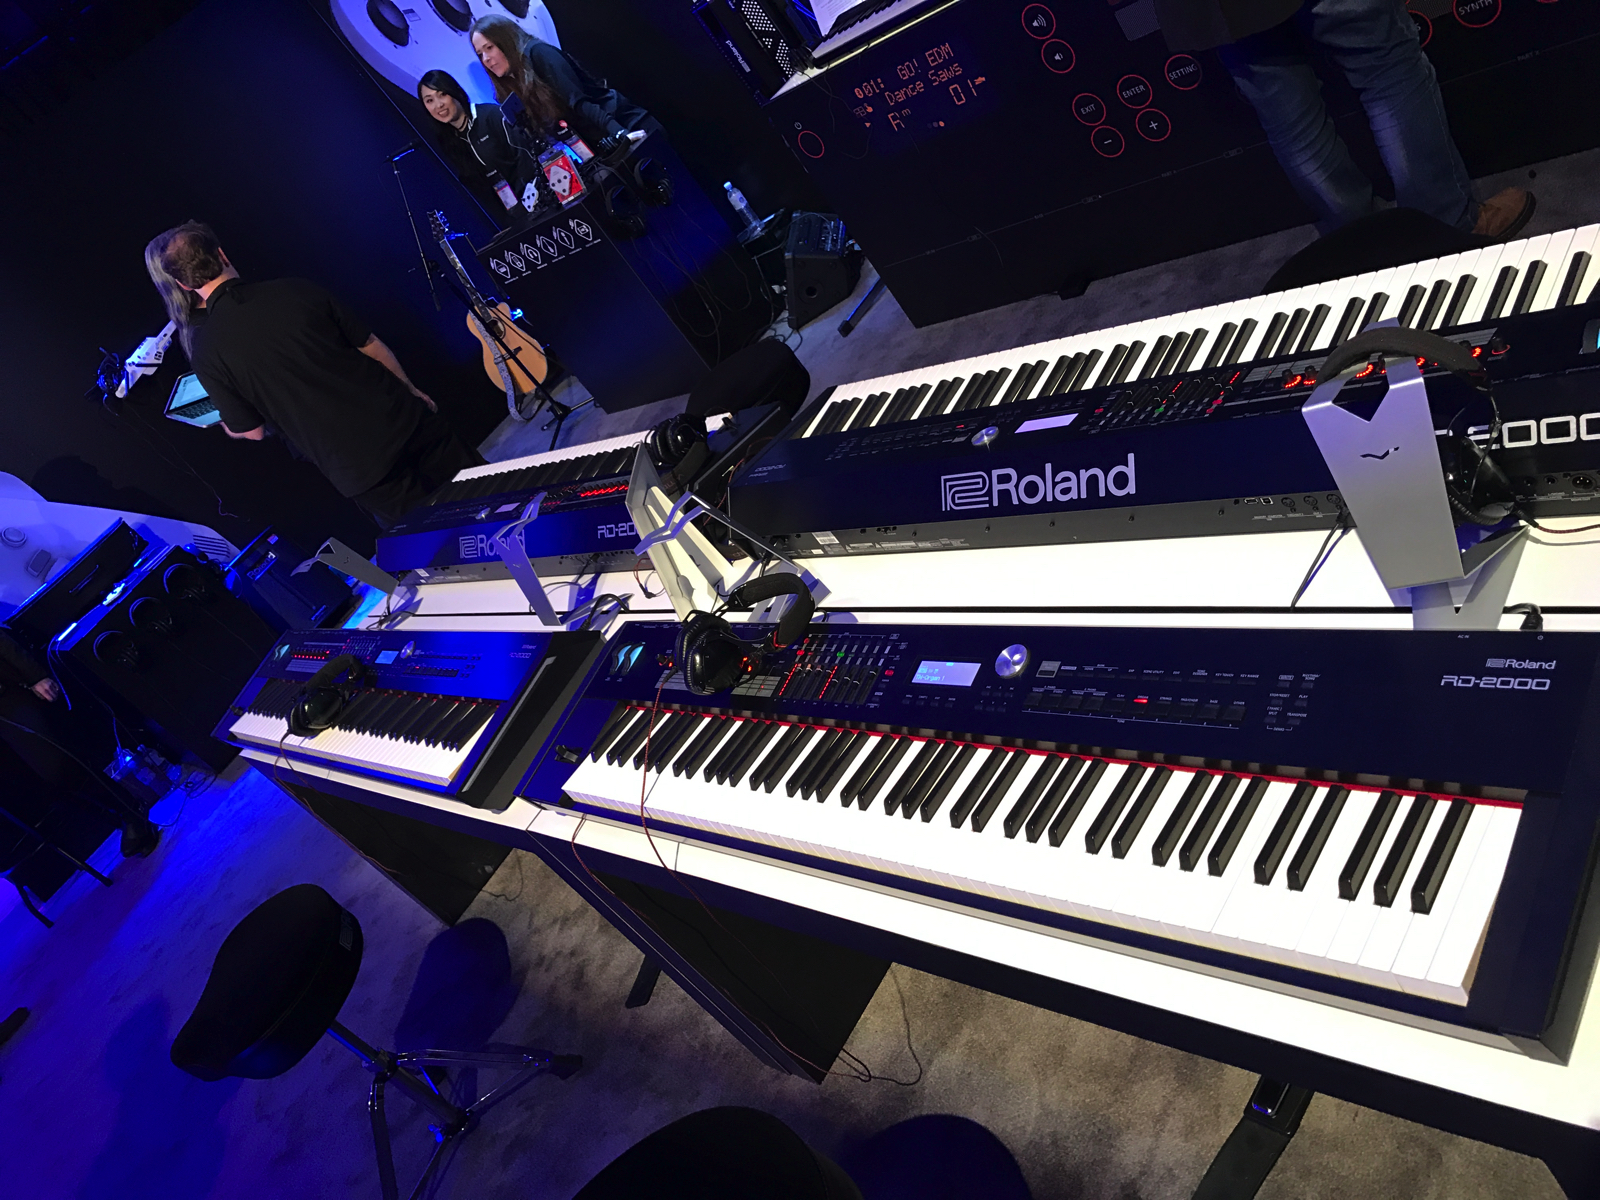 ステージピアノ最新モデル Rd 2000 を発表 Namm2017 ブースレポート Roland Dtmers 音楽制作者のためのwebマガジン By イシバシ楽器